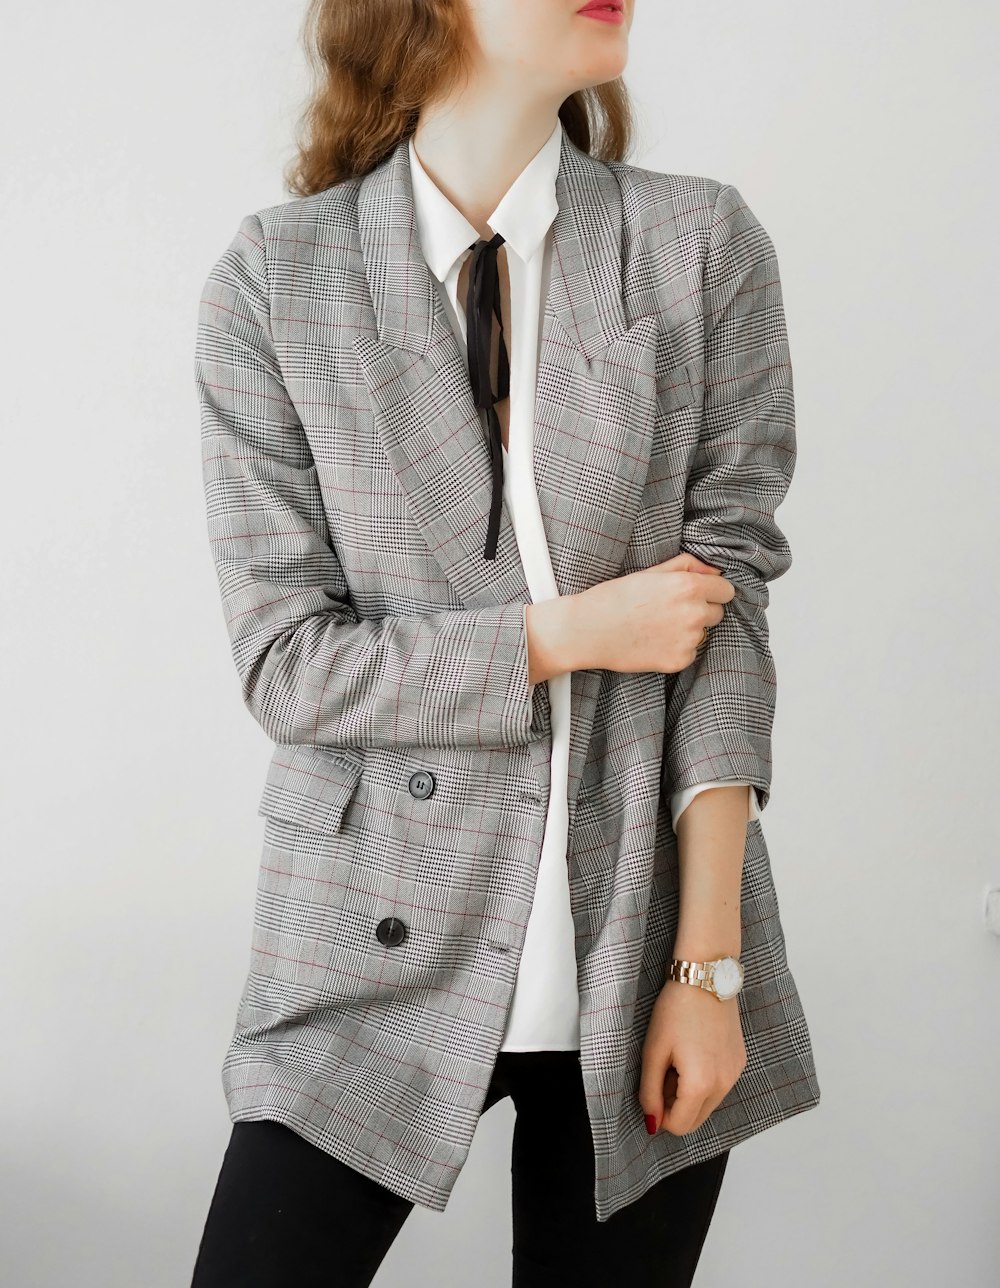 Foto mujer con blazer gris y pantalón negro – Imagen Moda gratis en Unsplash